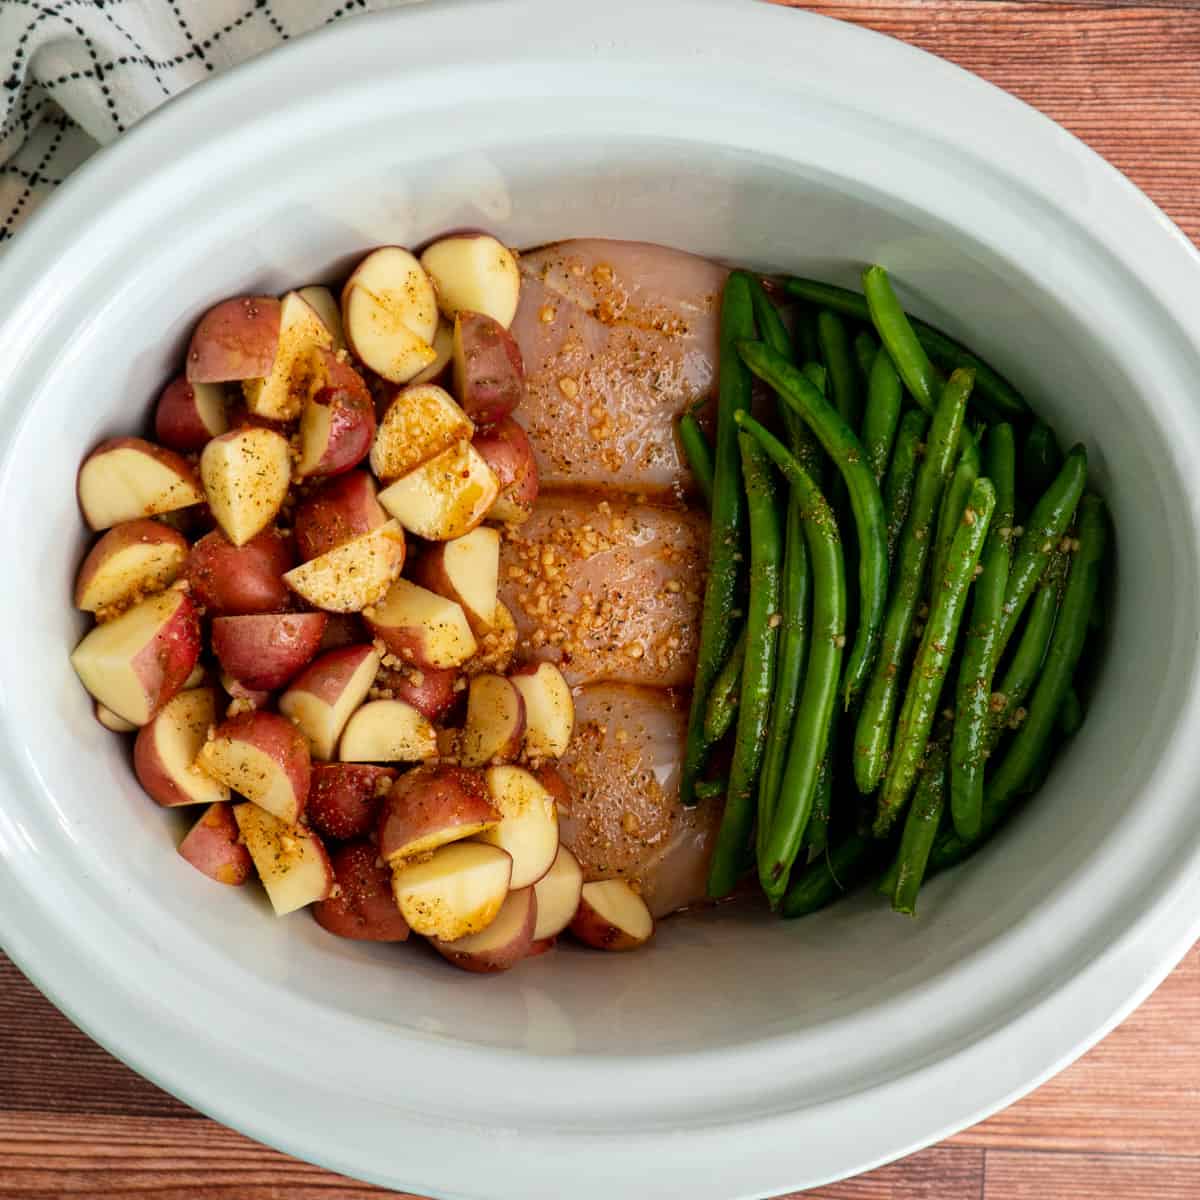 https://slowcookermeals.com/wp-content/uploads/2023/02/Crockpot-Chicken-Potatoes-and-Green-Beans.jpg